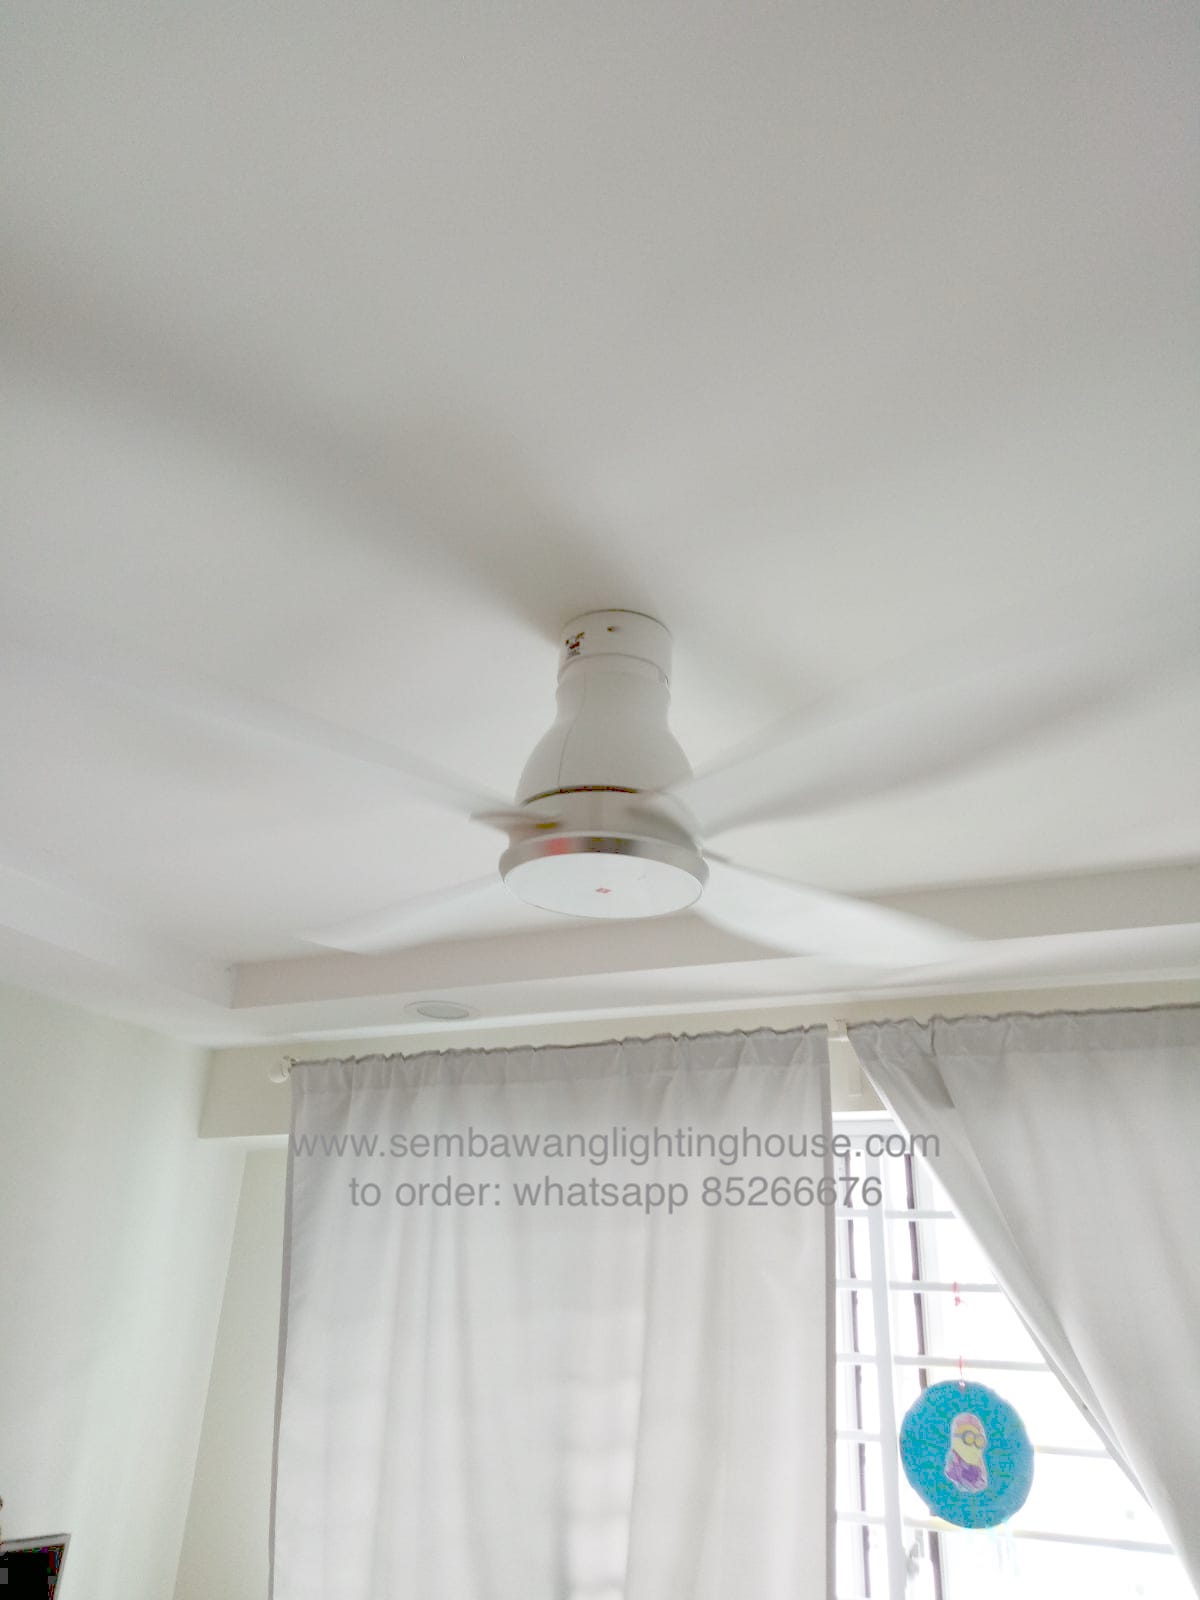 KDK W56WV White Ceiling Fan Sample | Sembawang Lighting House